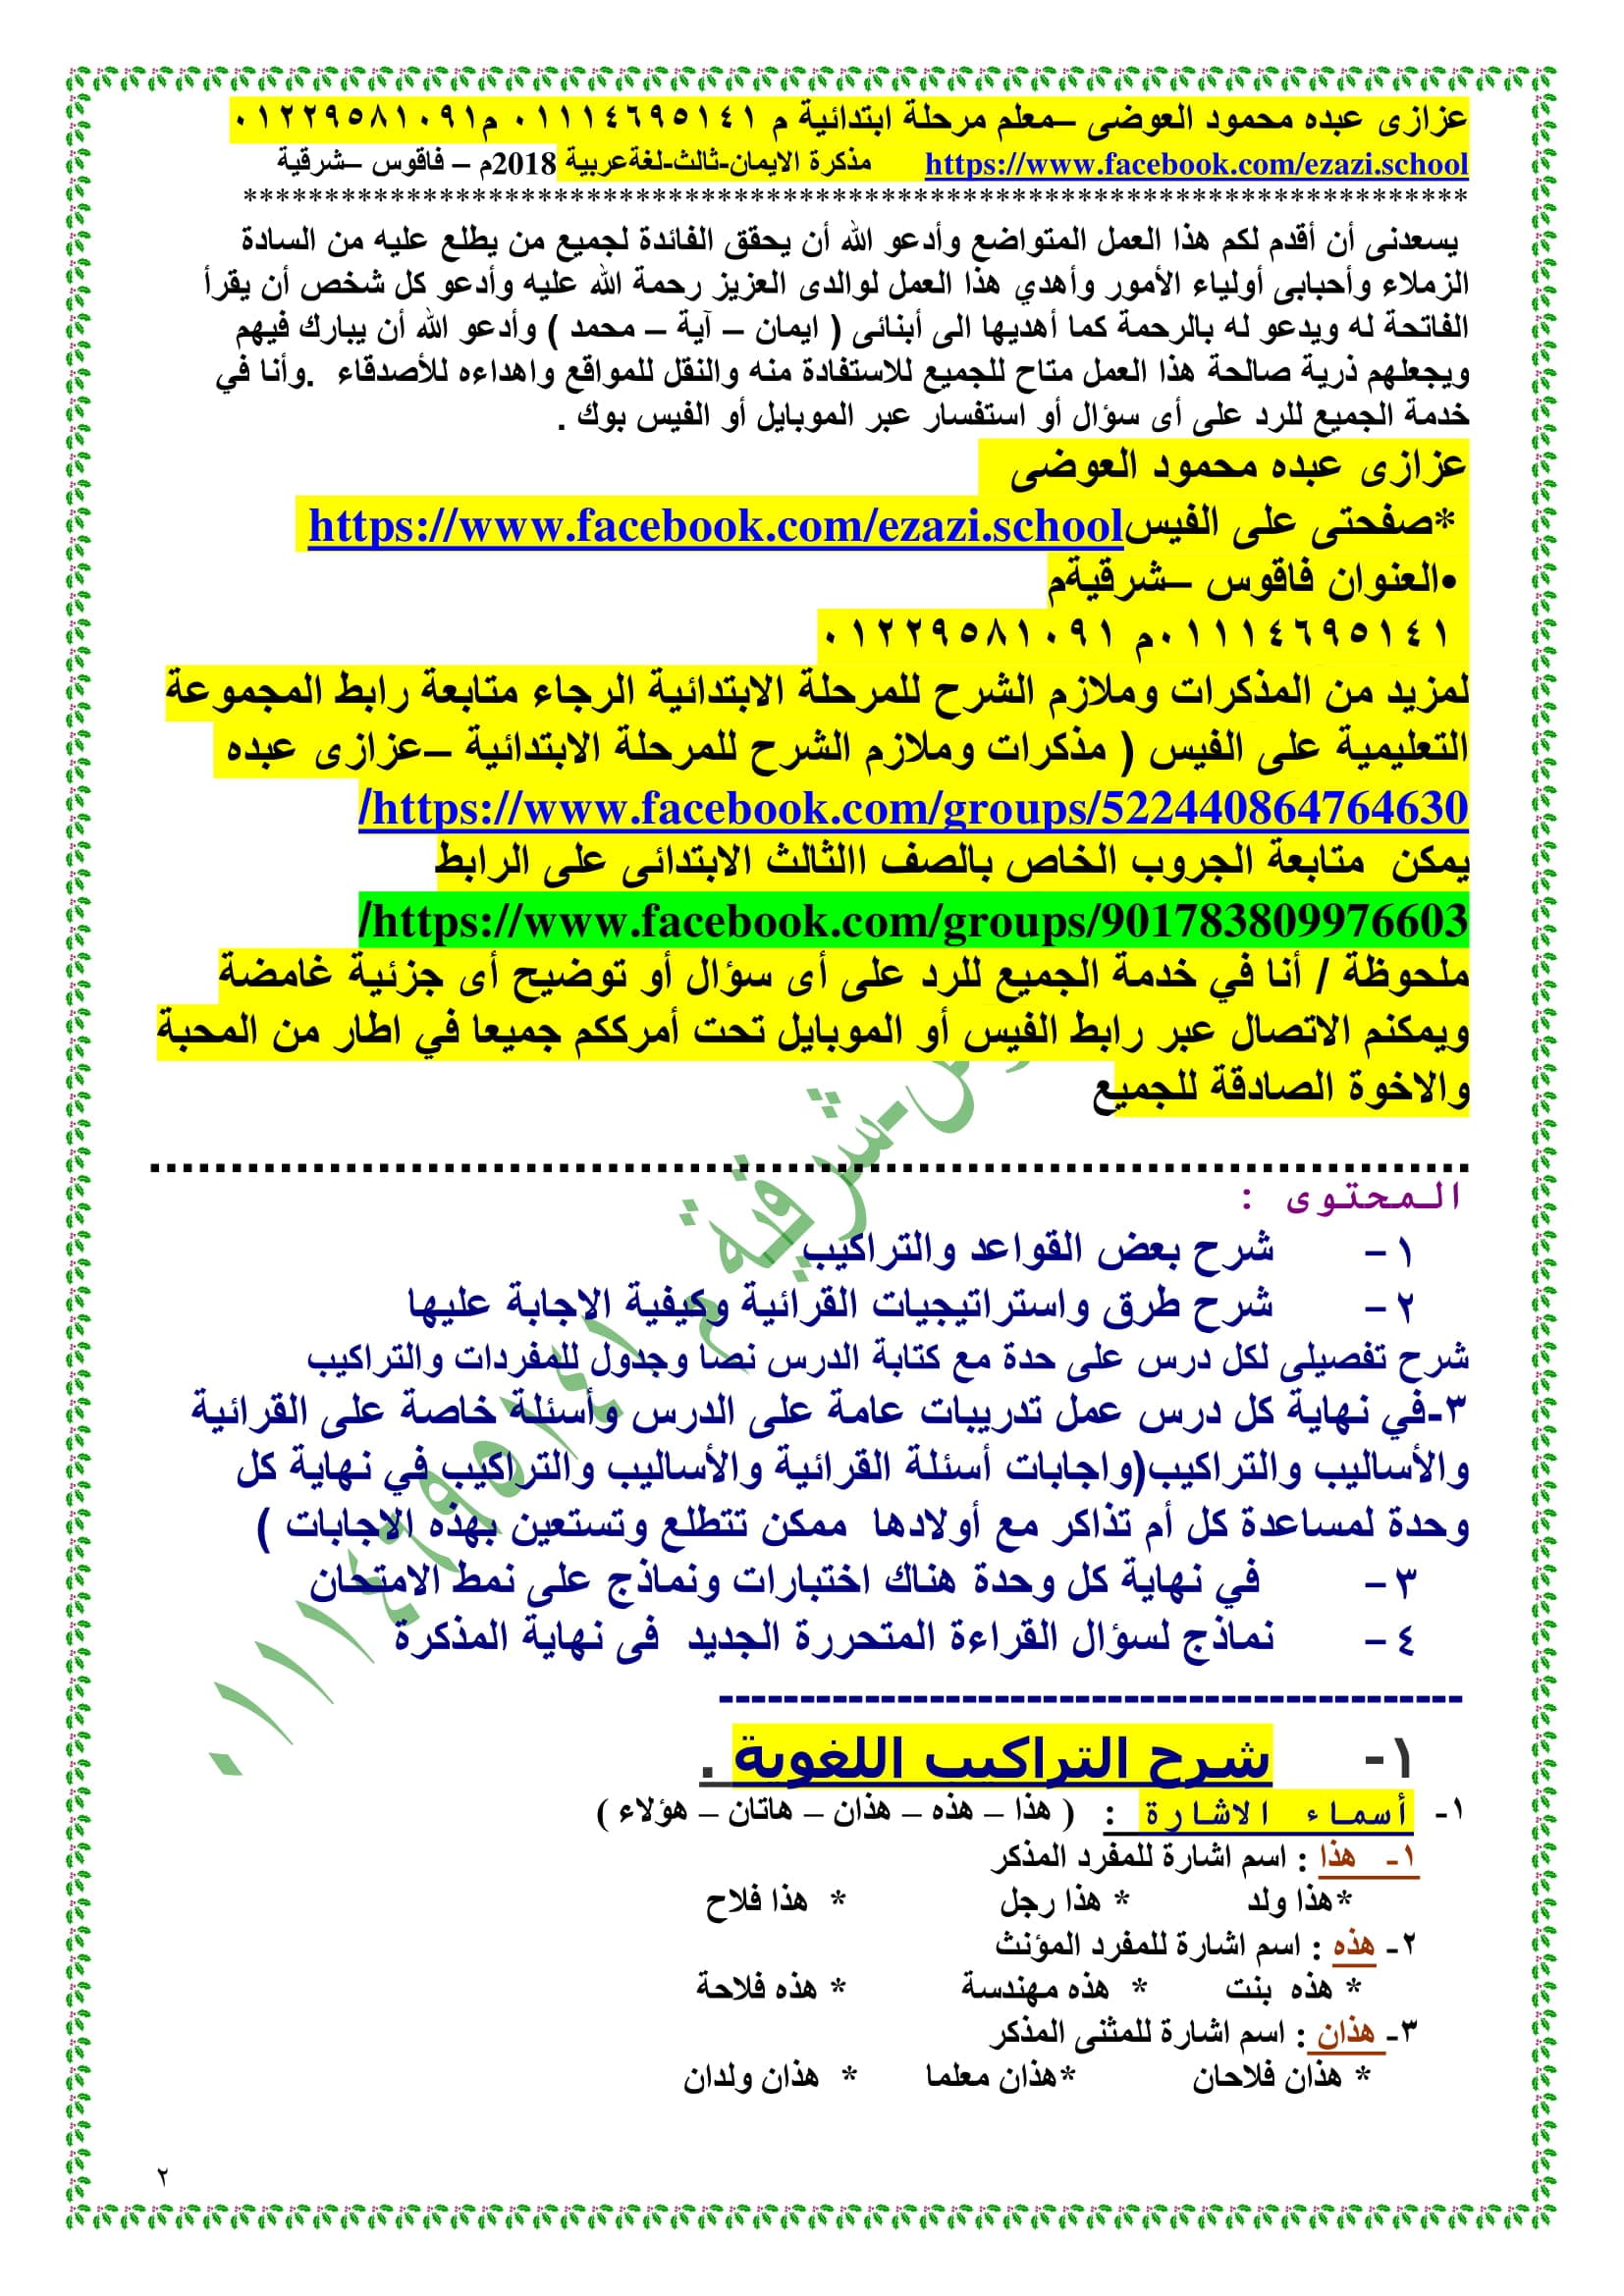 مراجعة ليلة الامتحان فى اللغة العربية للصف الثالث الابتدائى الترم الثانى